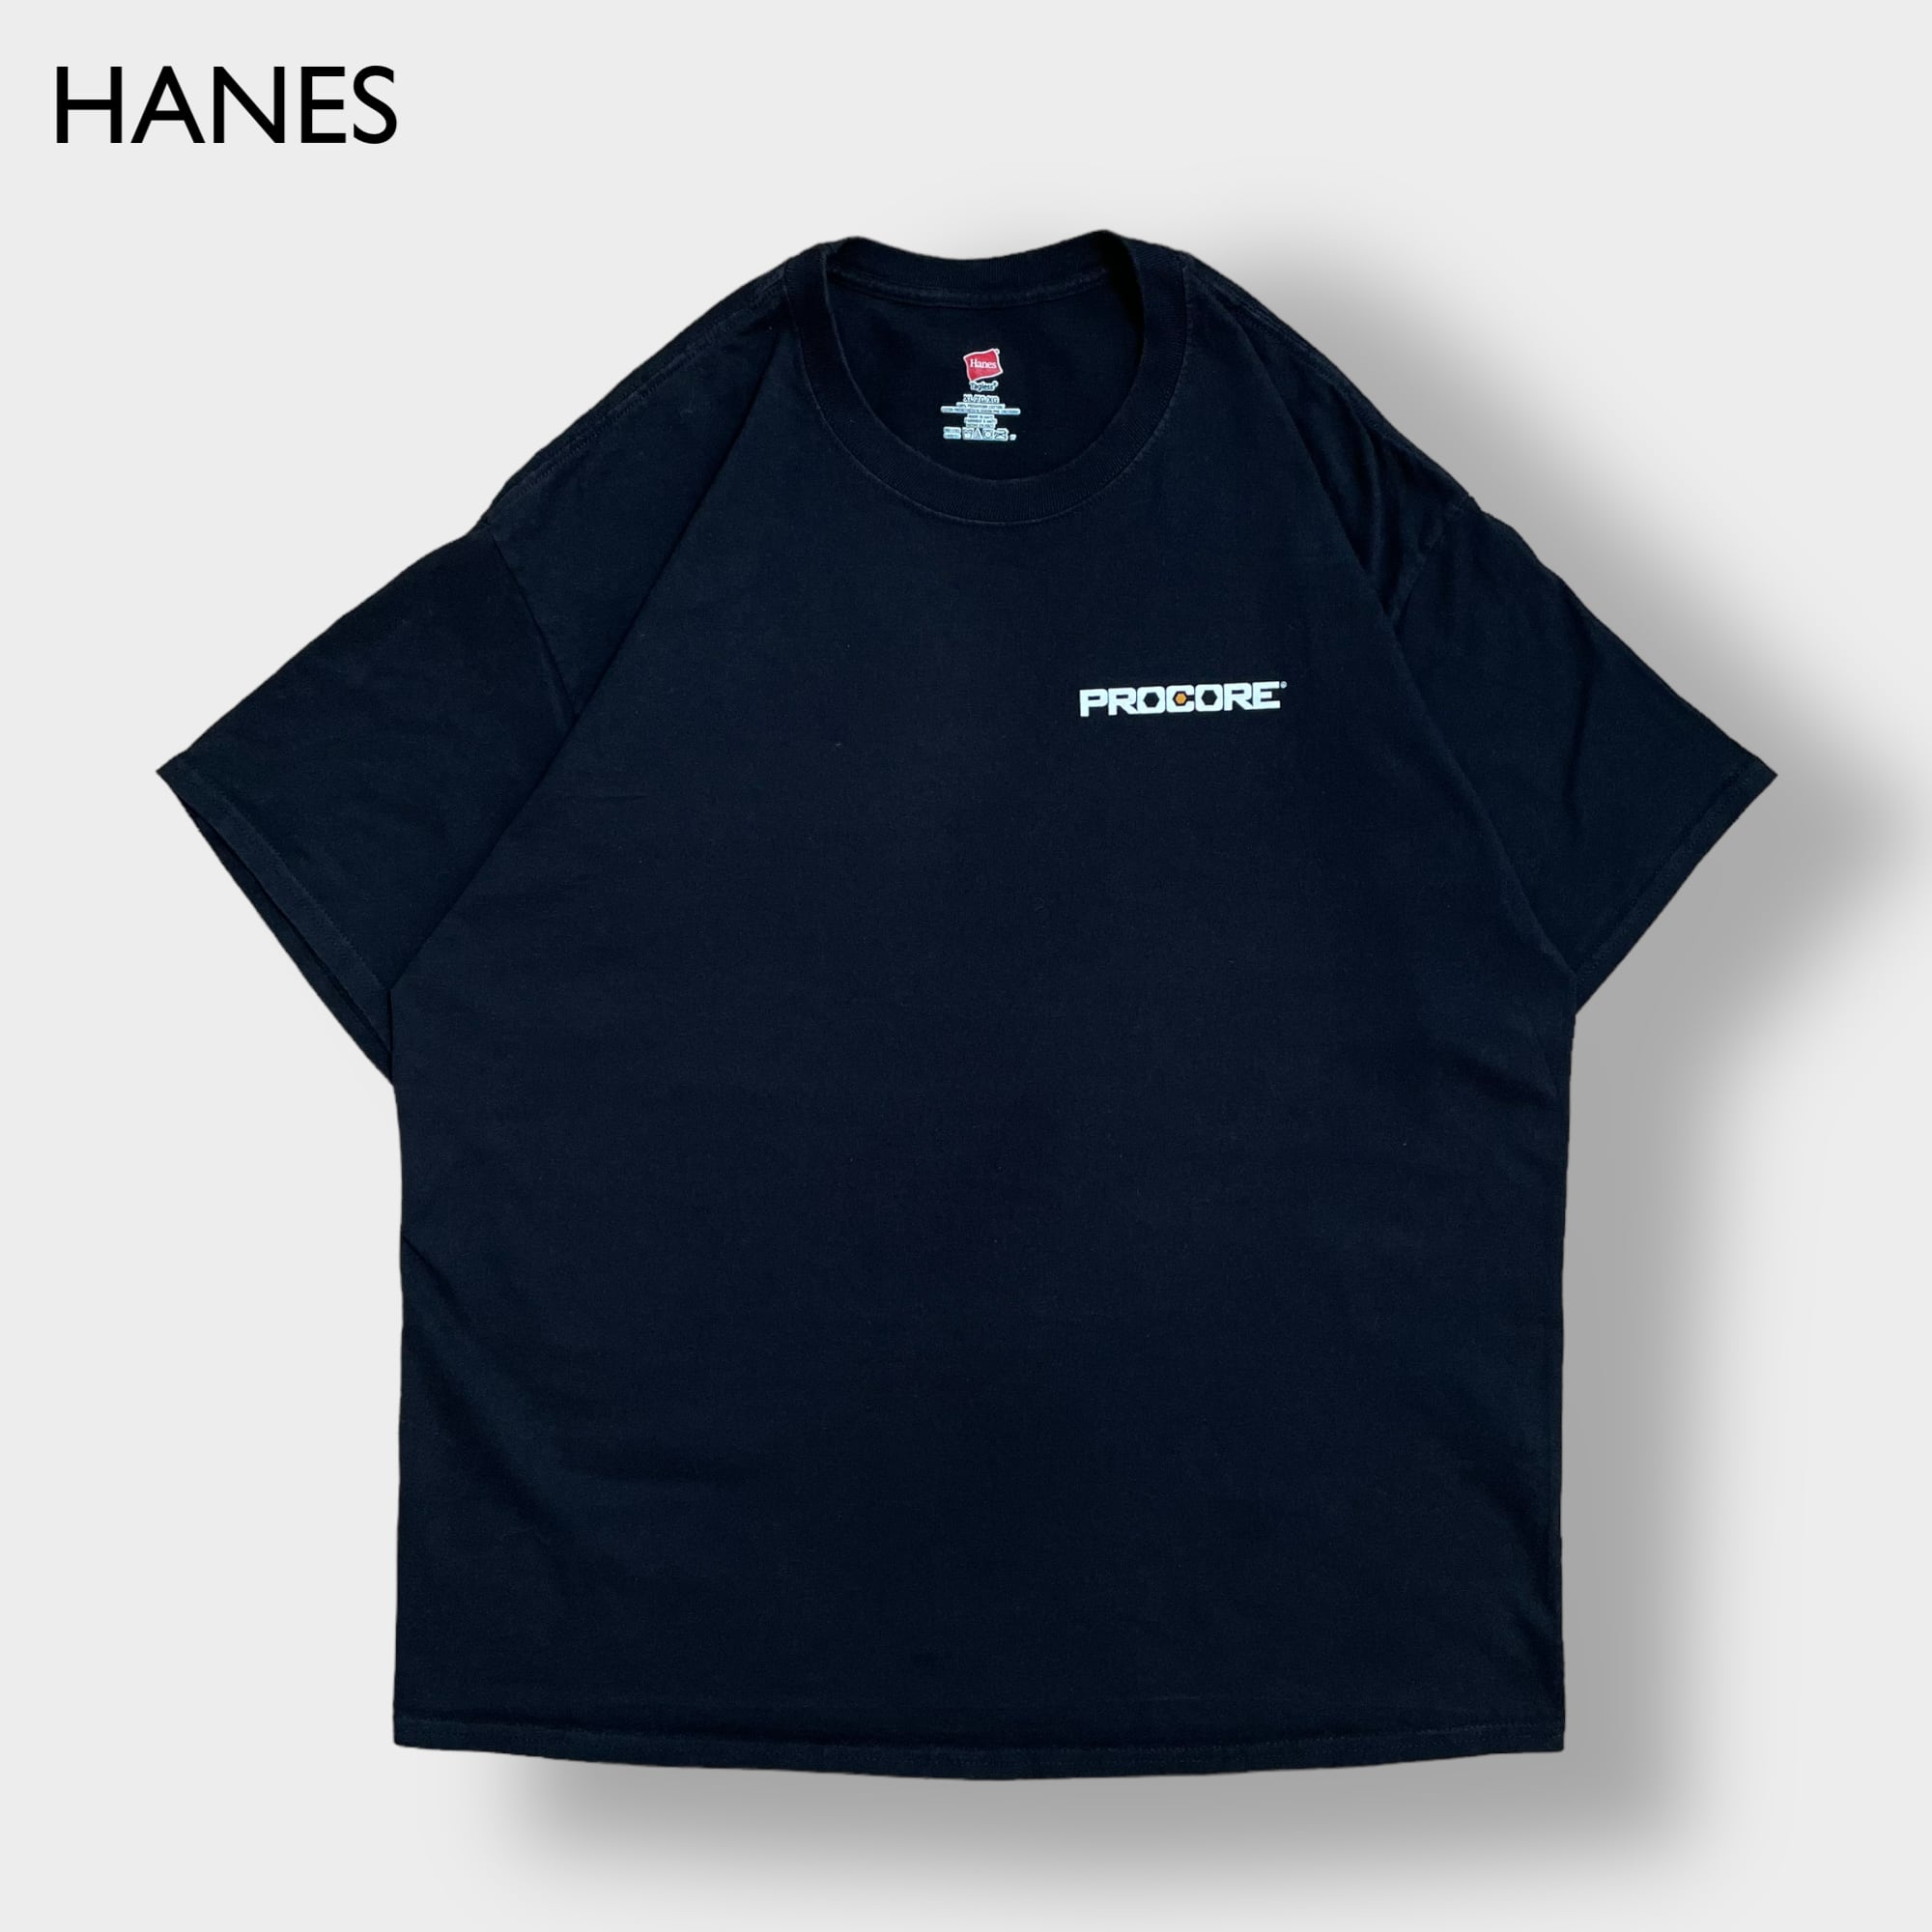 HANES】企業系 建築系 ソフトウェア PROCORE ワンポイントロゴ Tシャツ ...